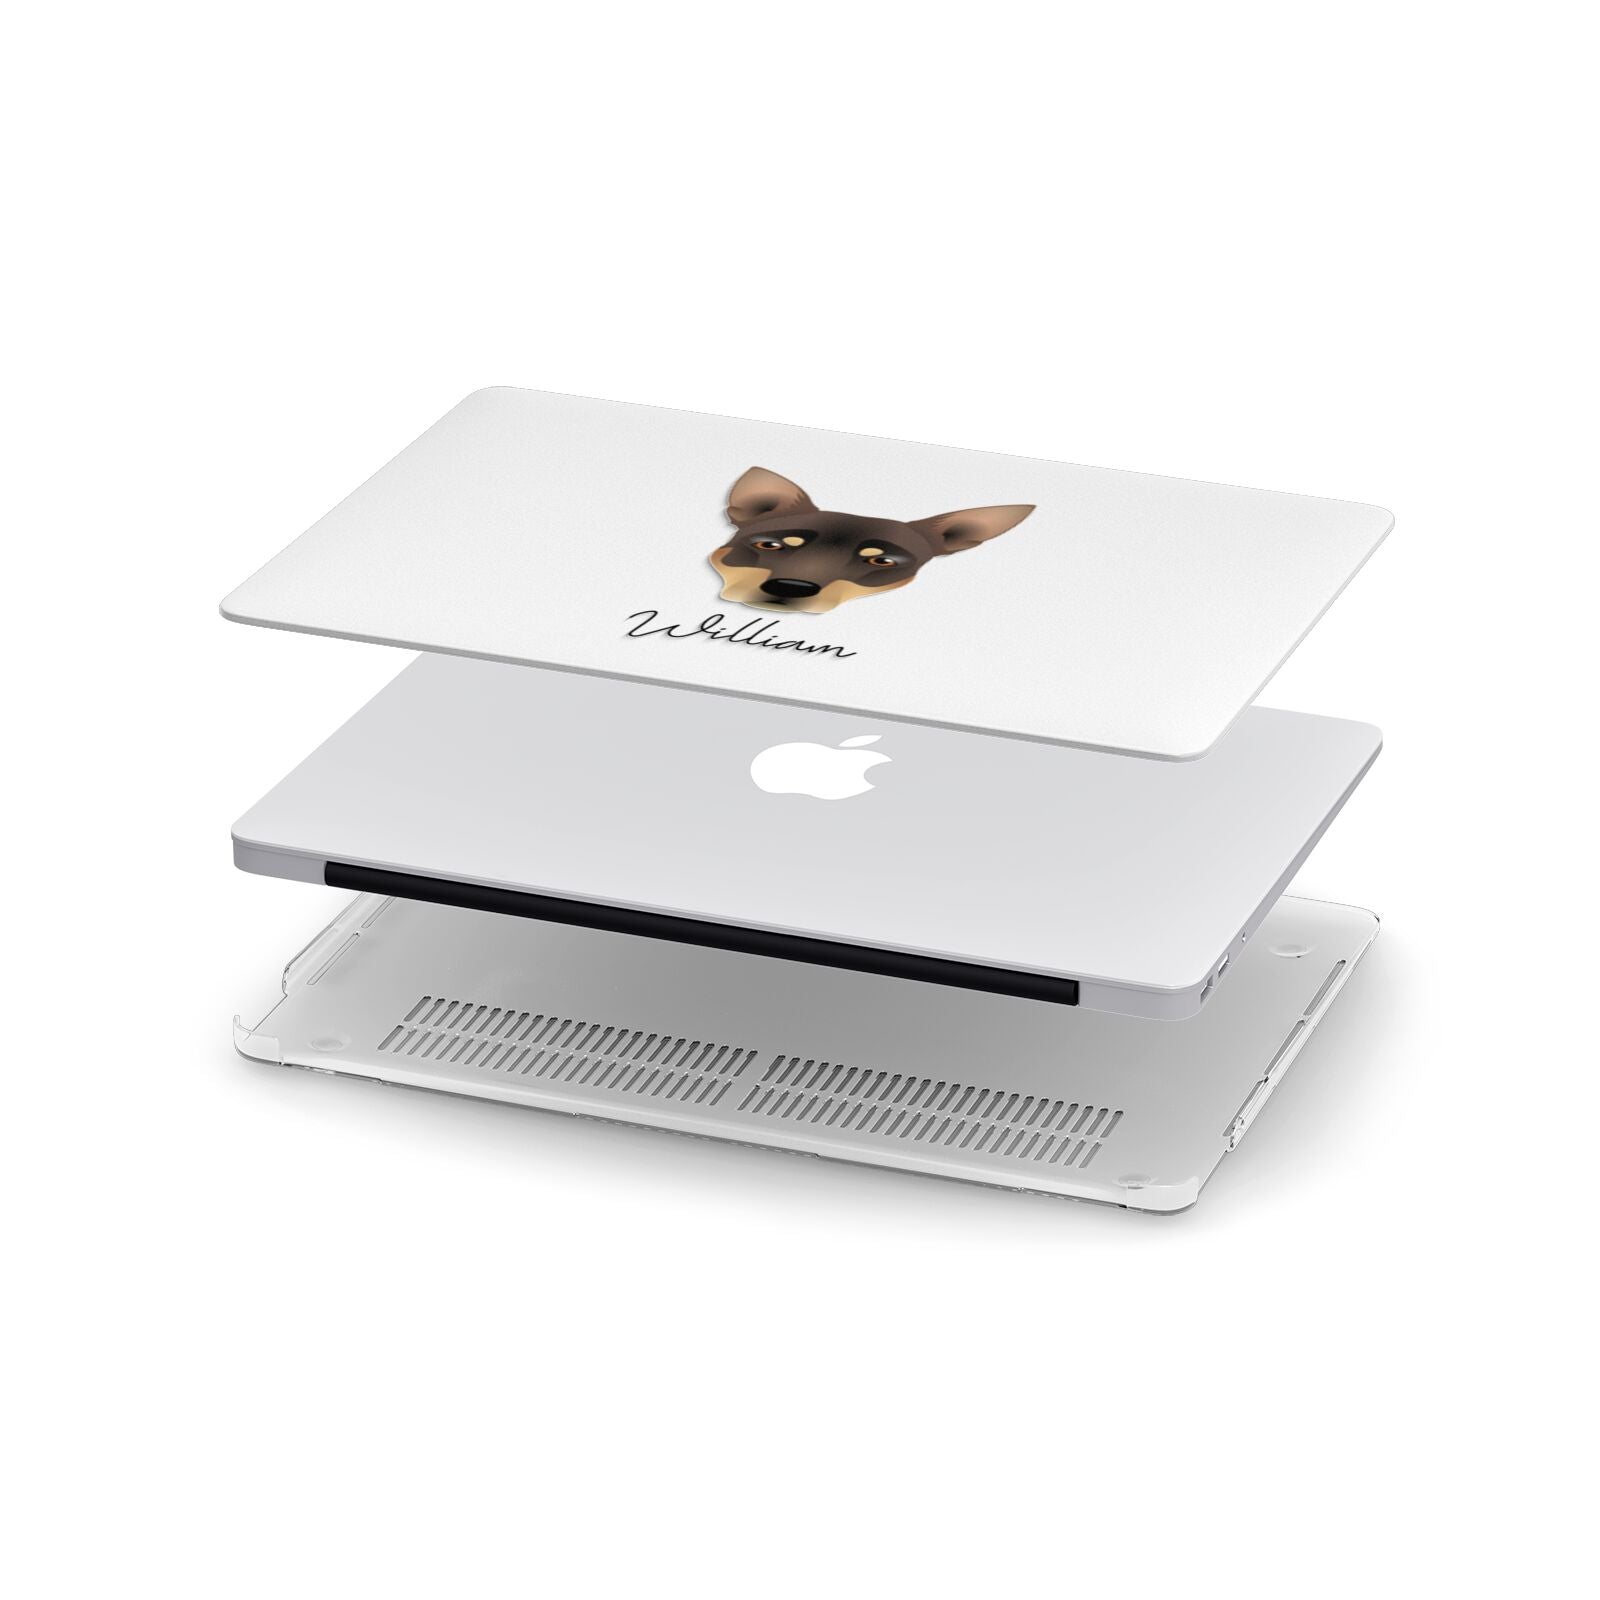 Australian Working Kelpie Personalised Apple MacBook Case in Detail